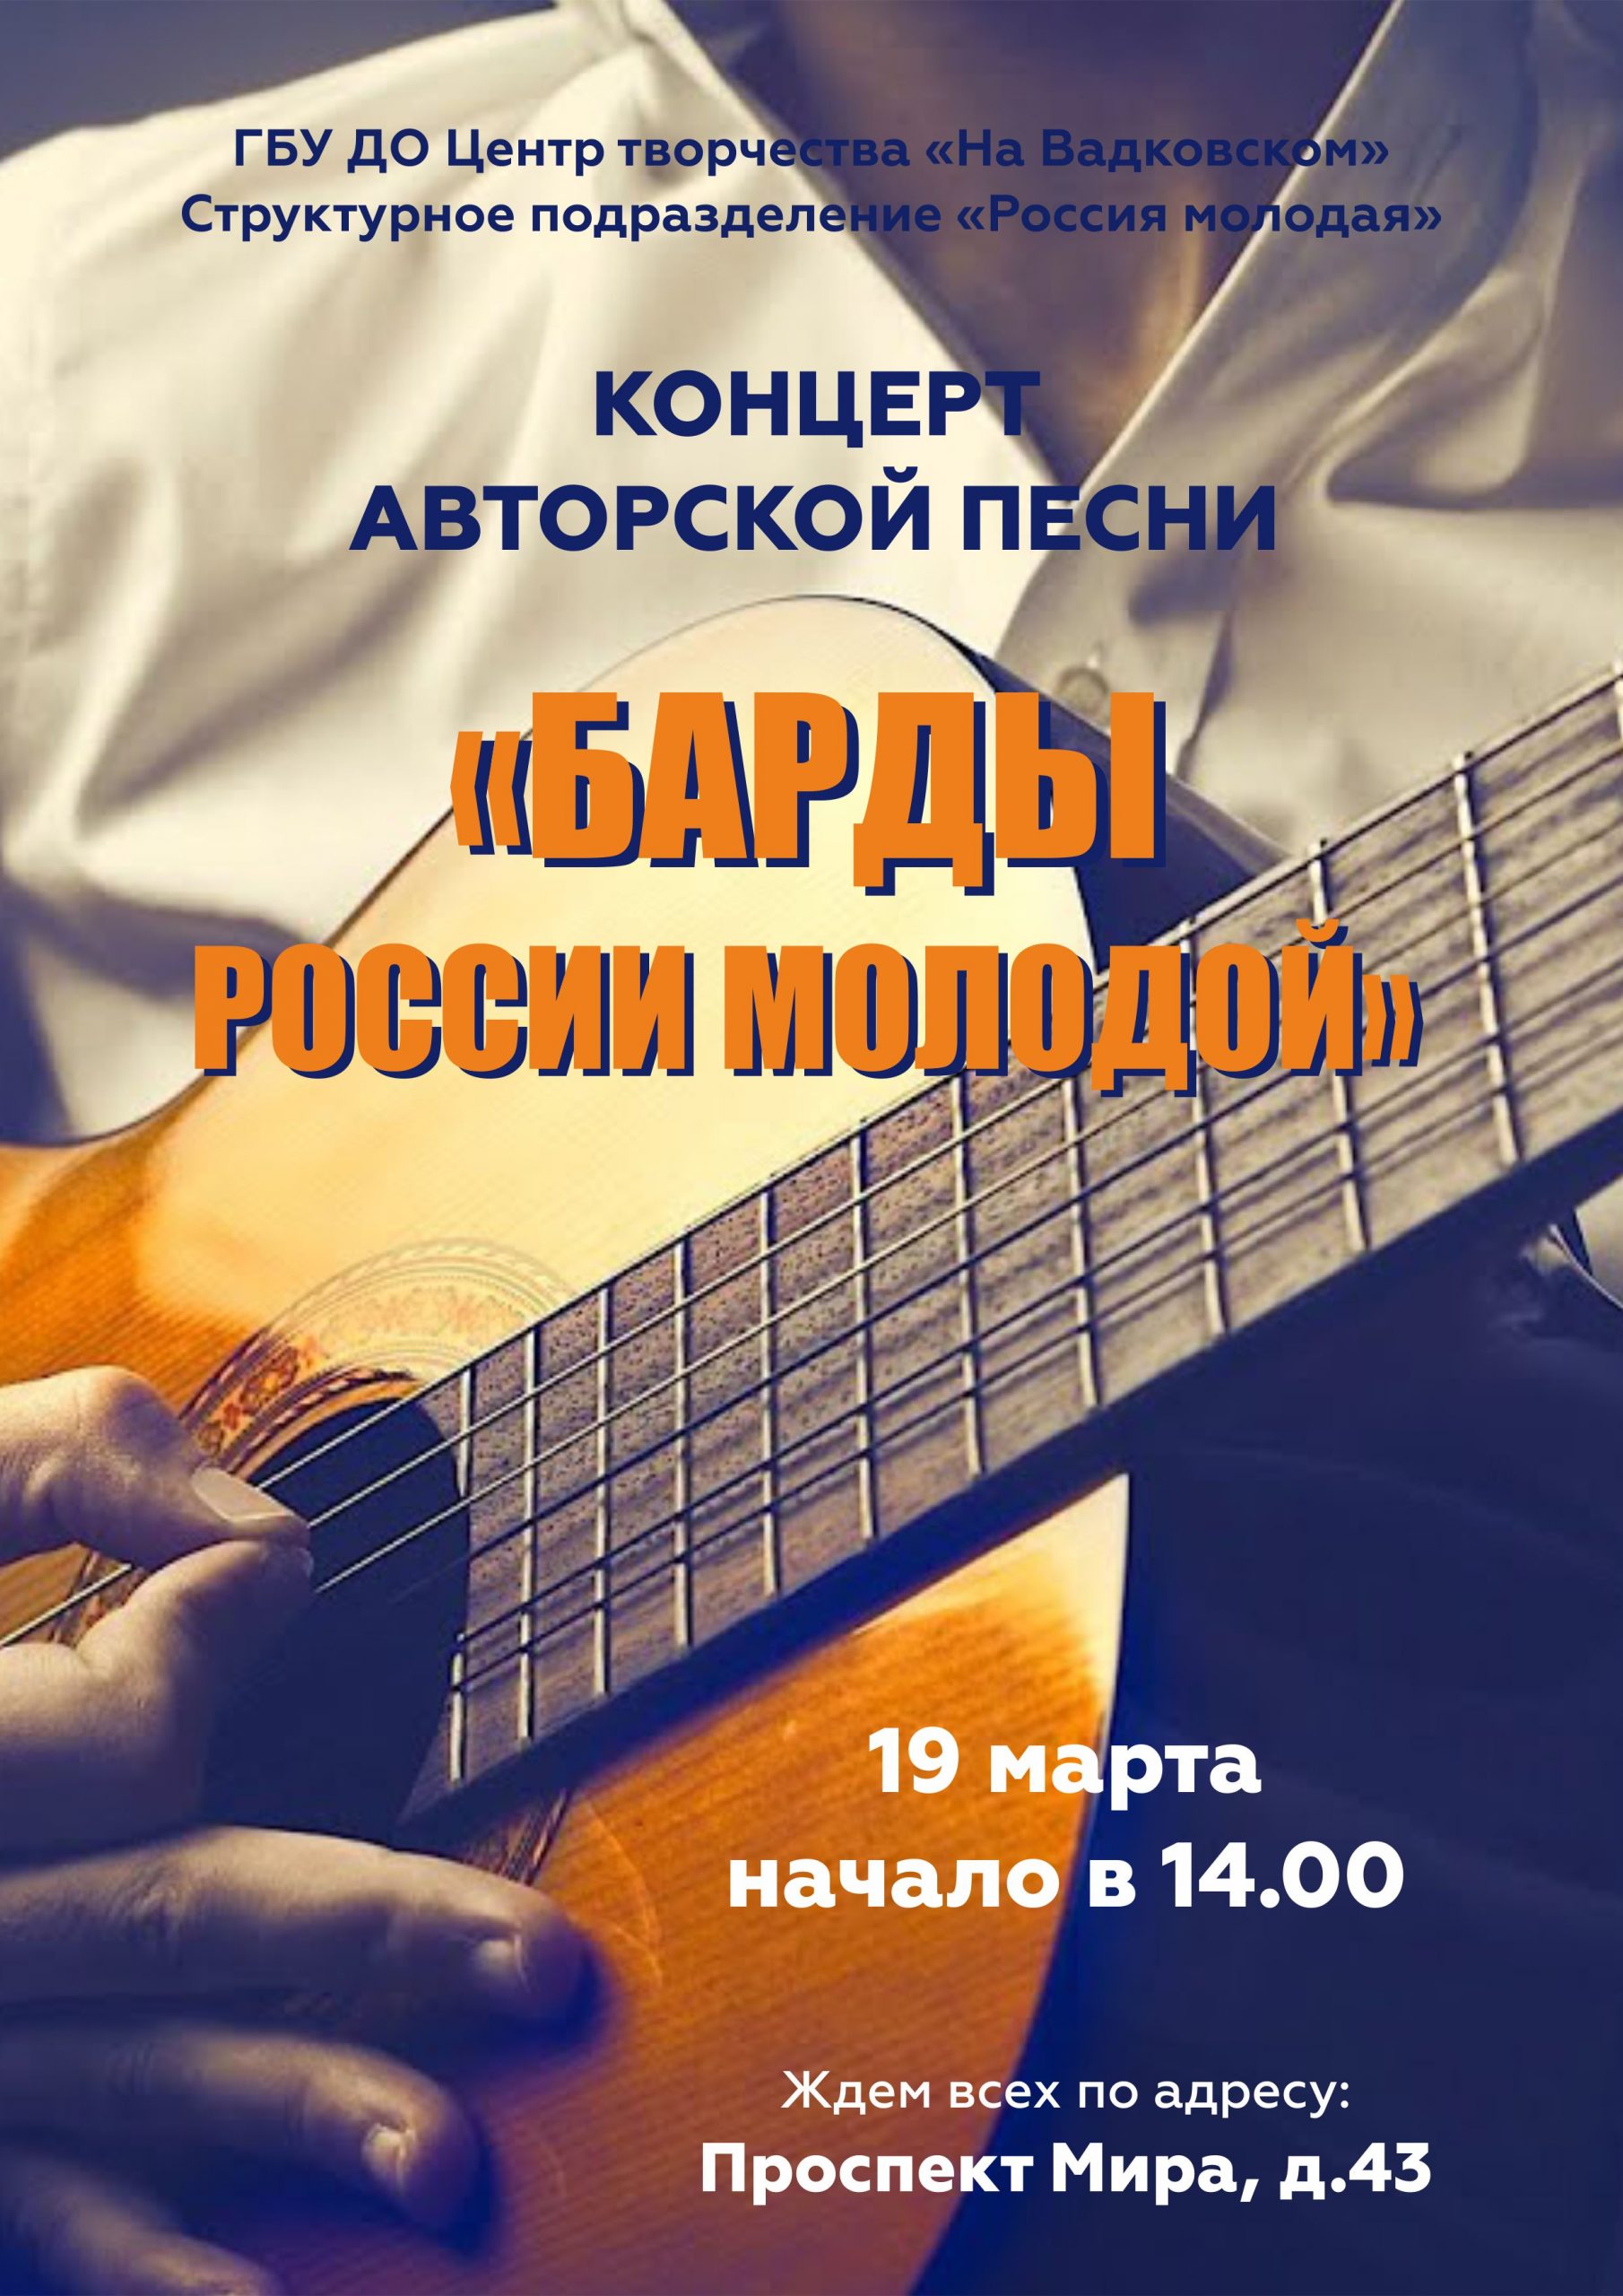 КОНЦЕРТ АВТОРСКОЙ ПЕСНИ «БАРДЫ РОССИИ МОЛОДОЙ»